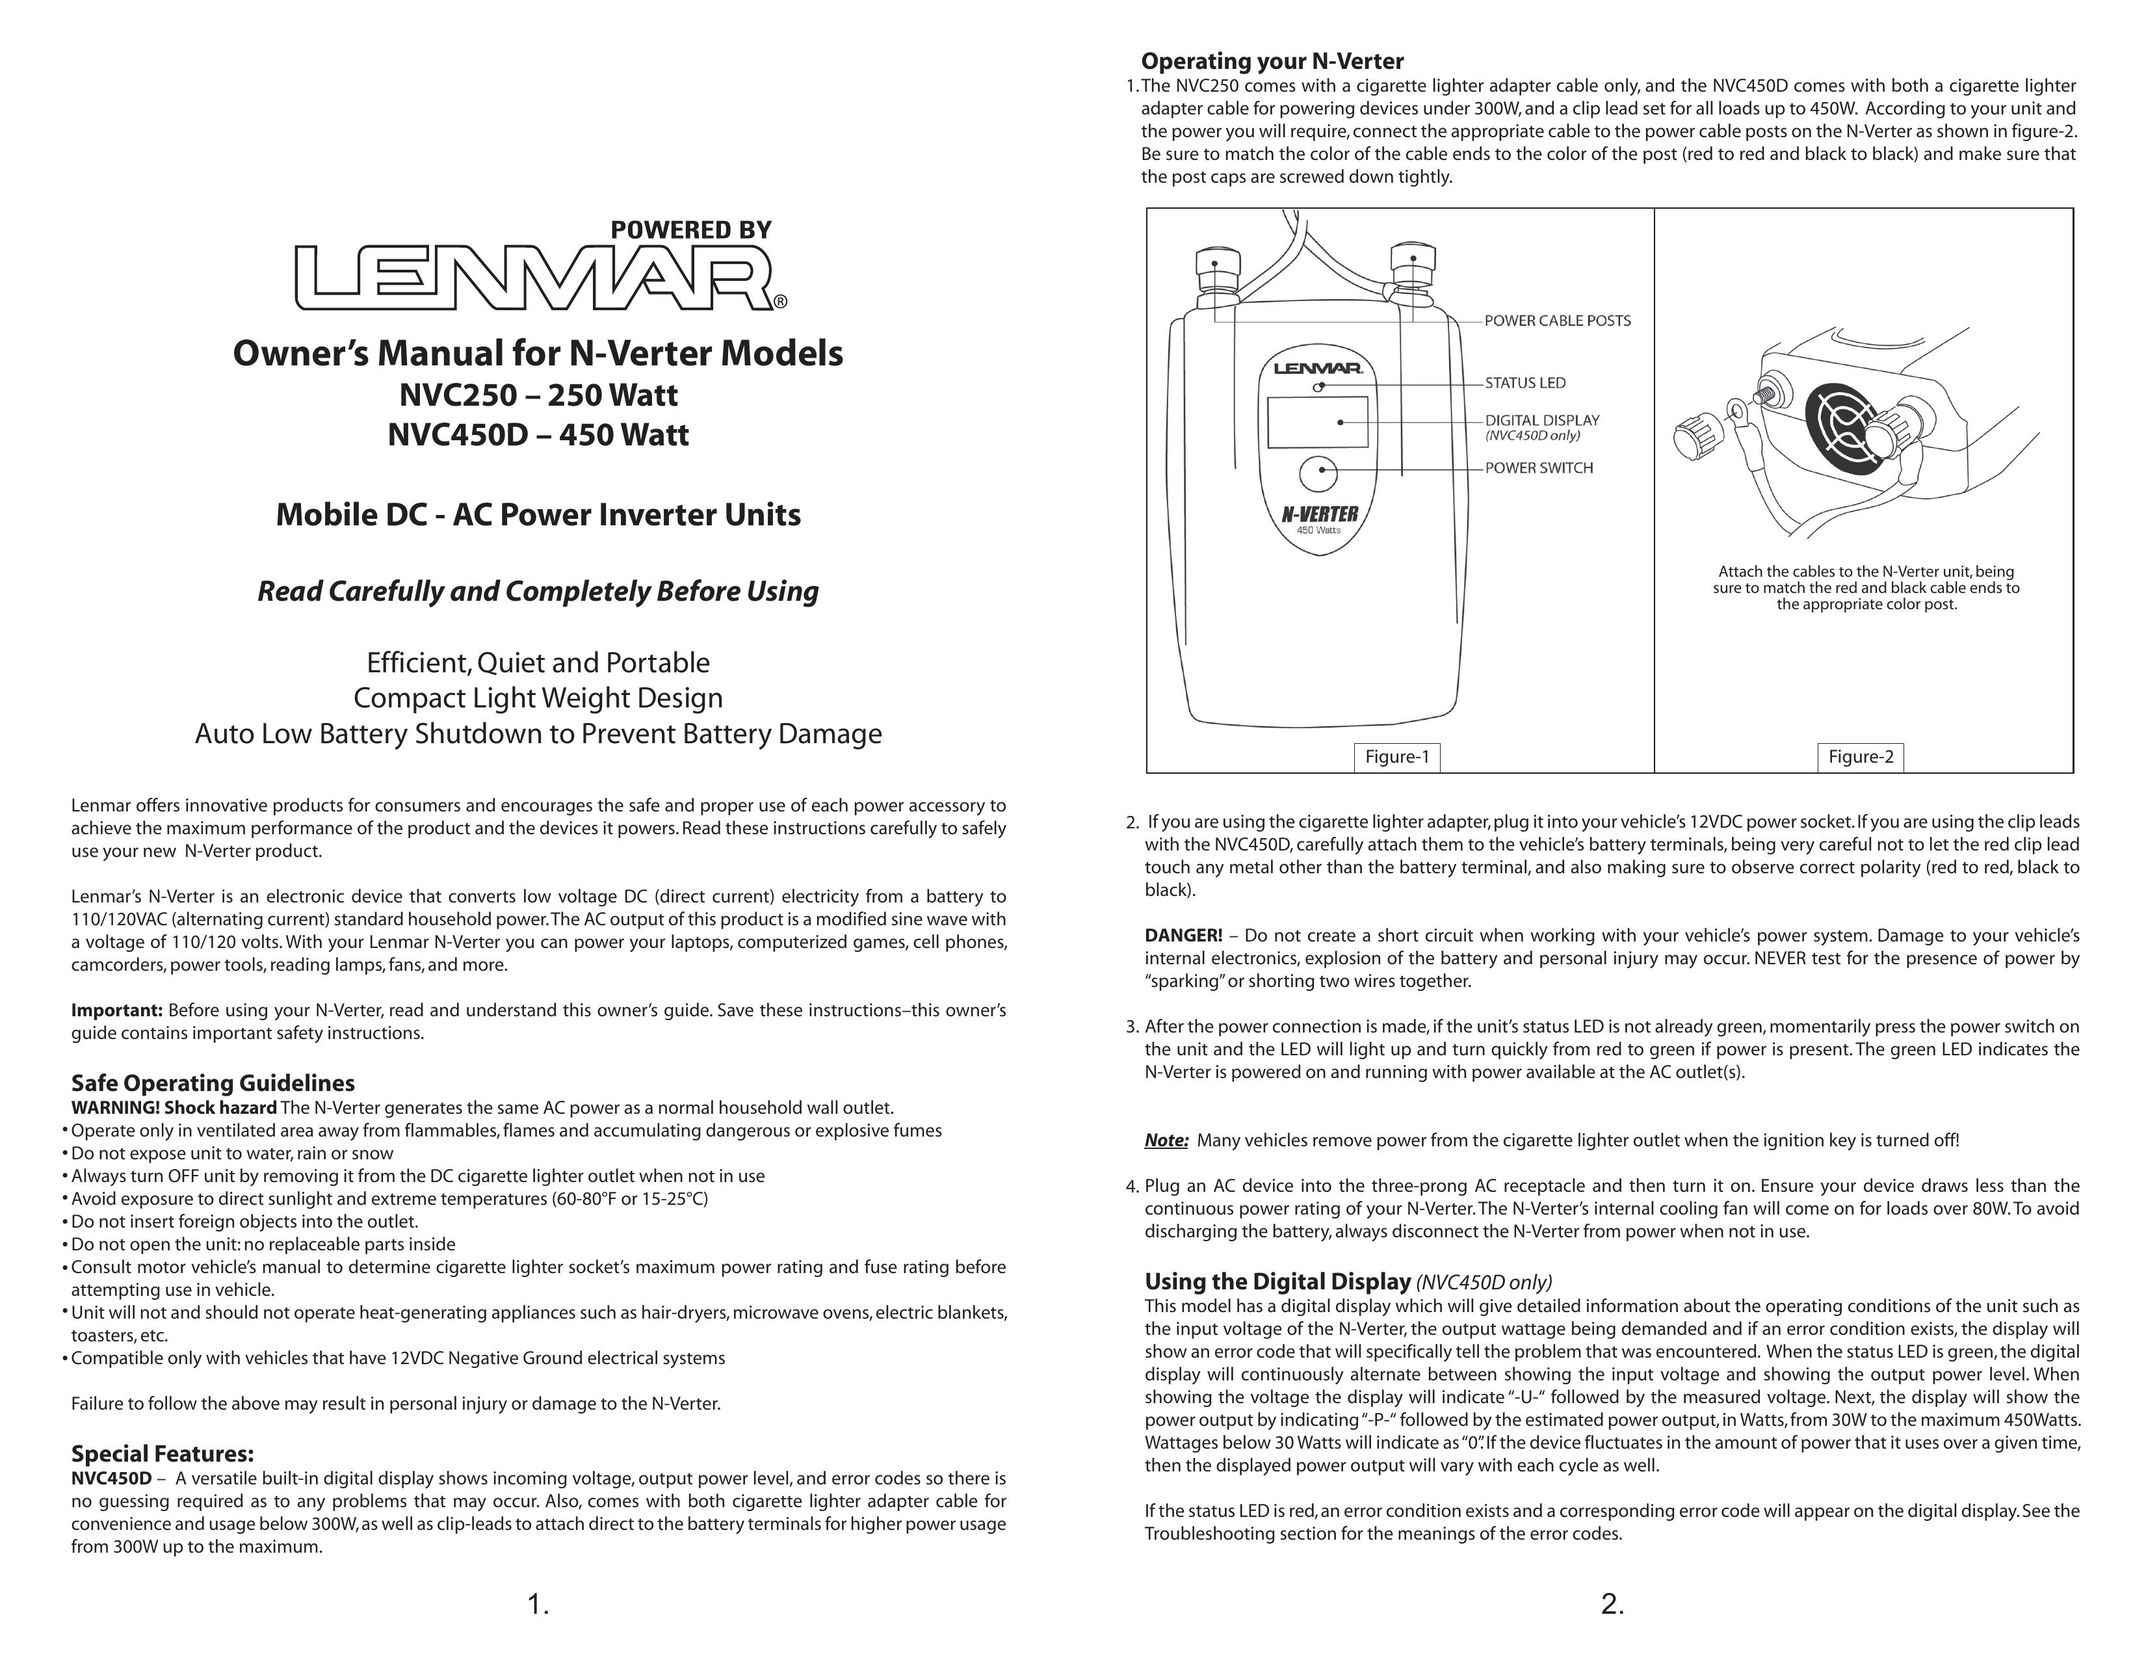 Lenmar Enterprises NVC250 Car Stereo System User Manual